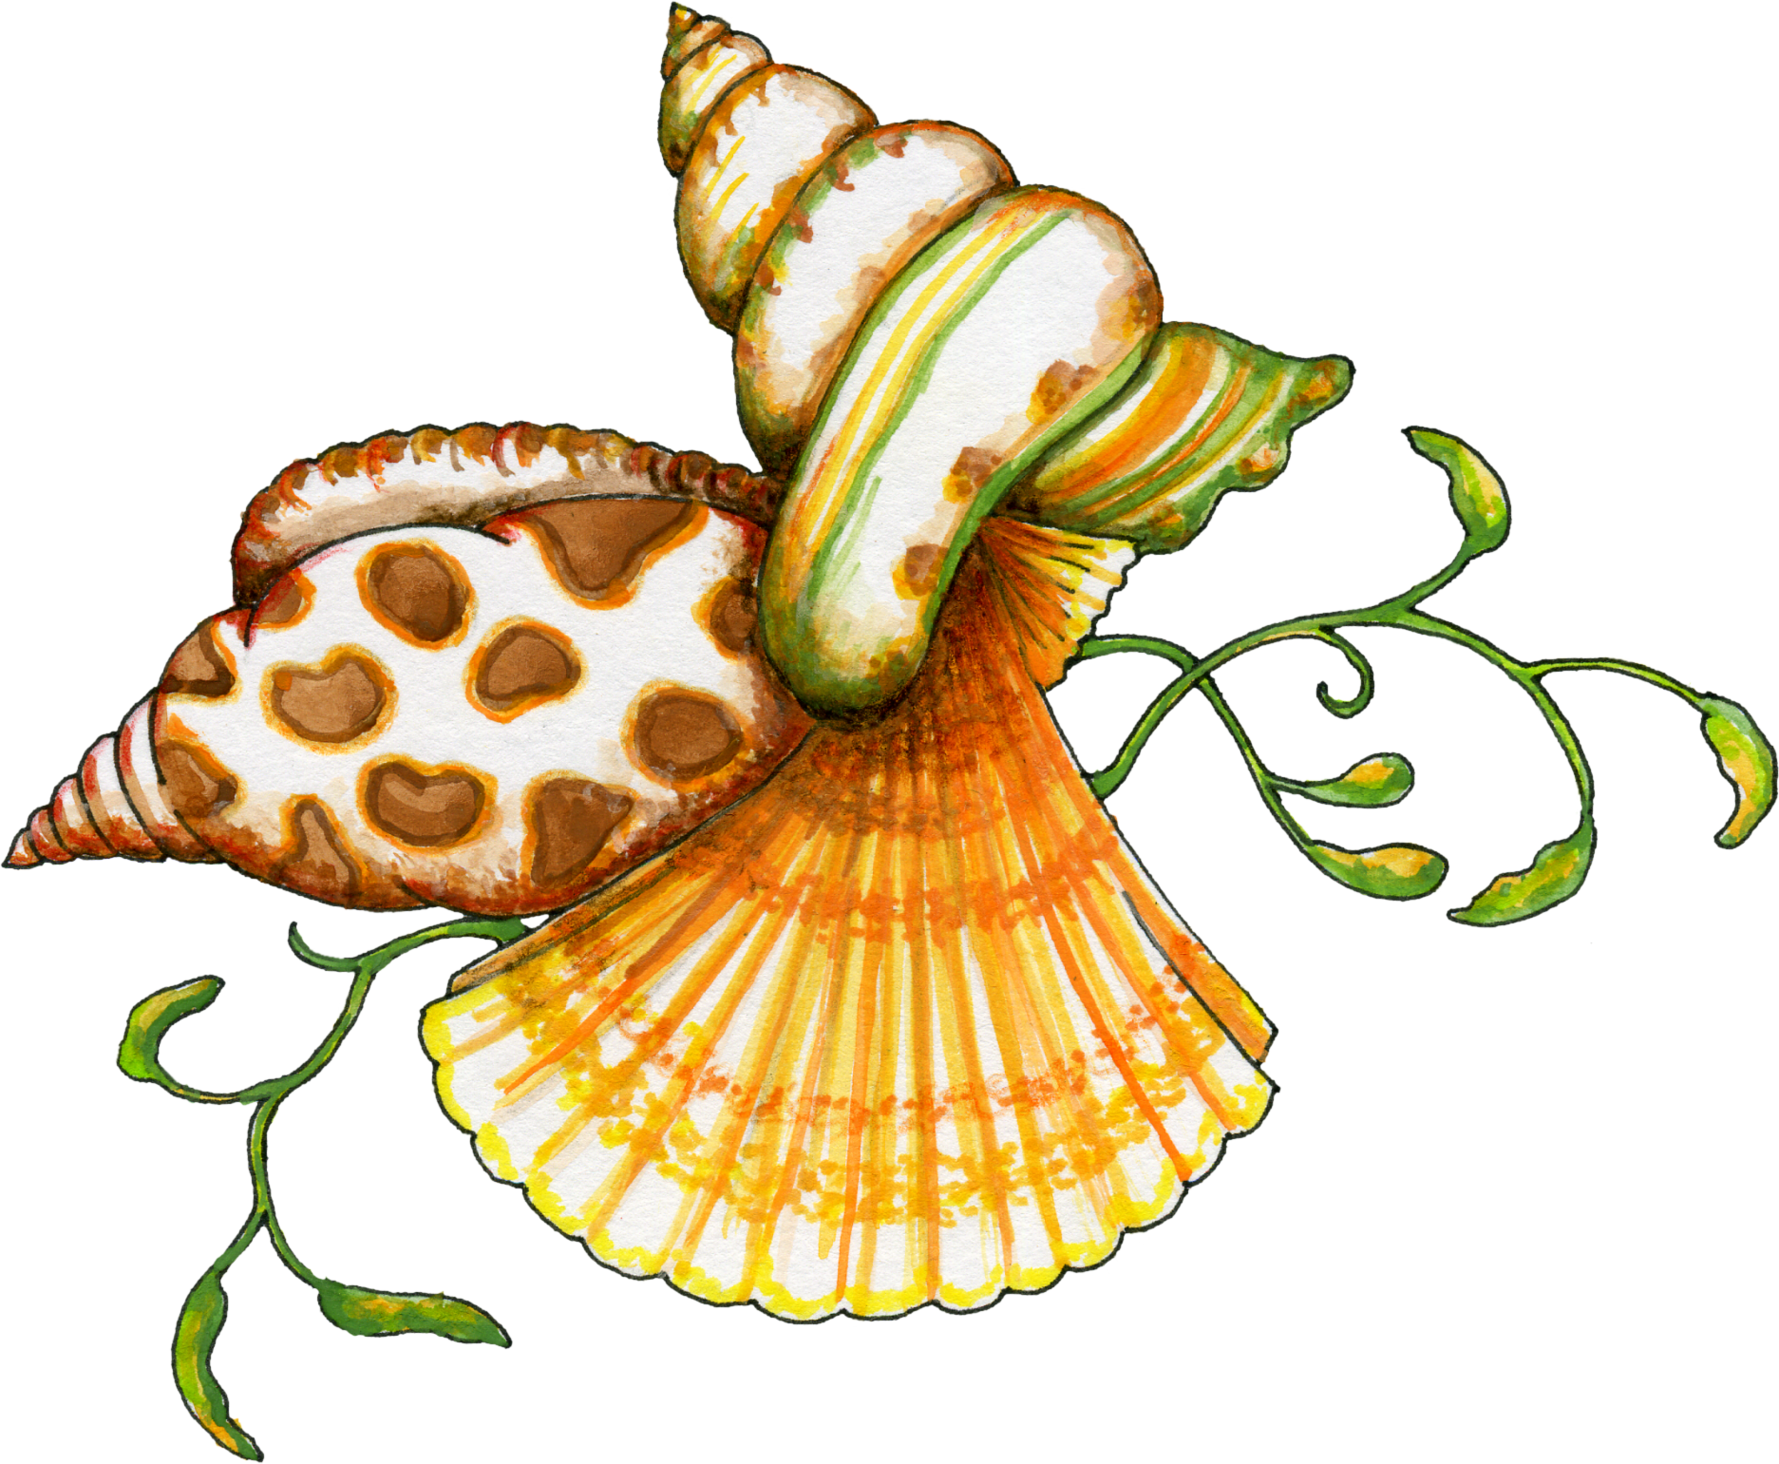 Sea Shells Clip Art - Tumundografico